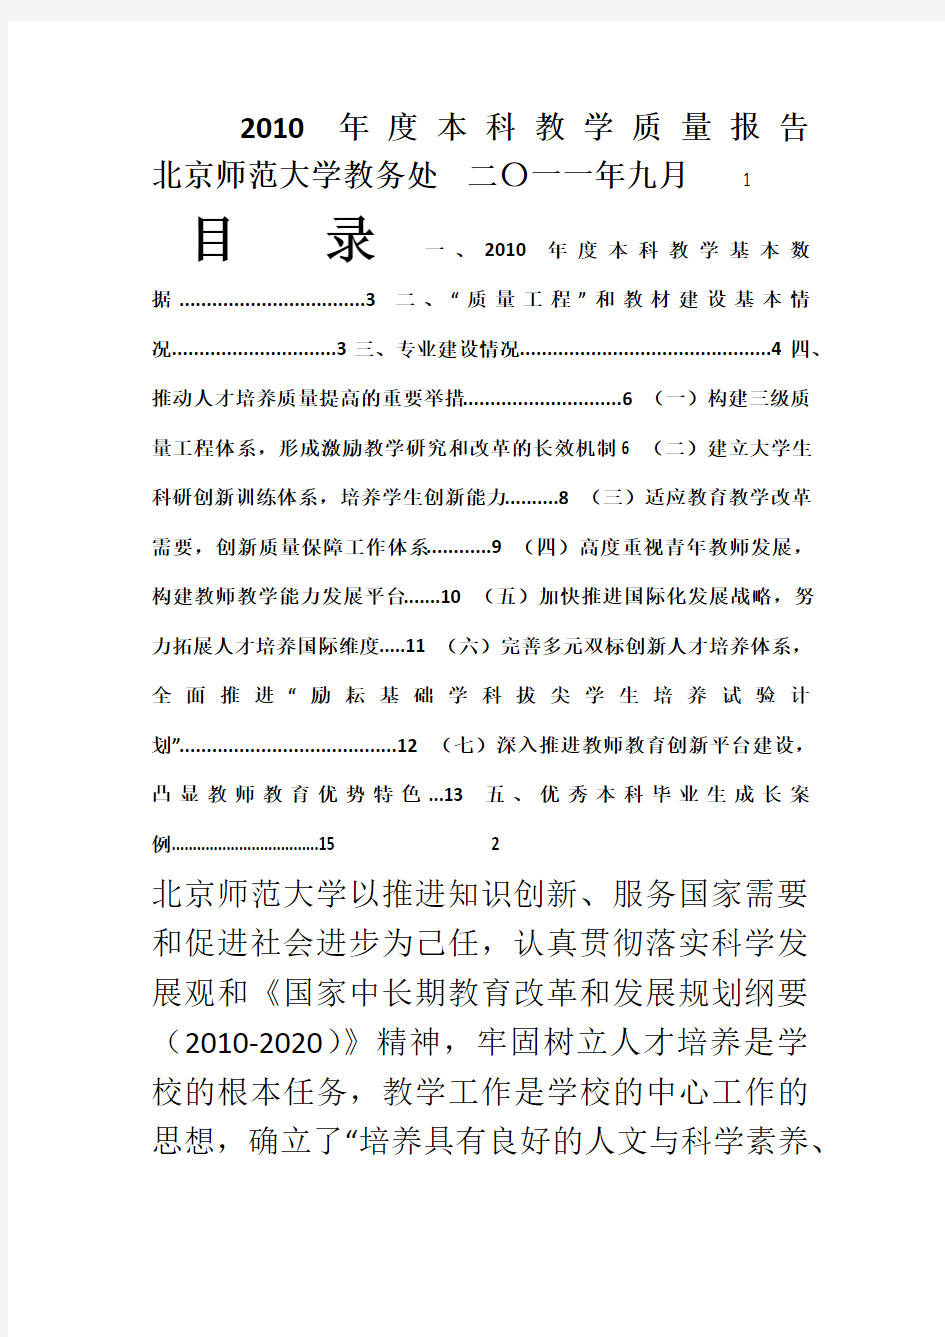 北京师范大学-2010 年度本科教学质量报告